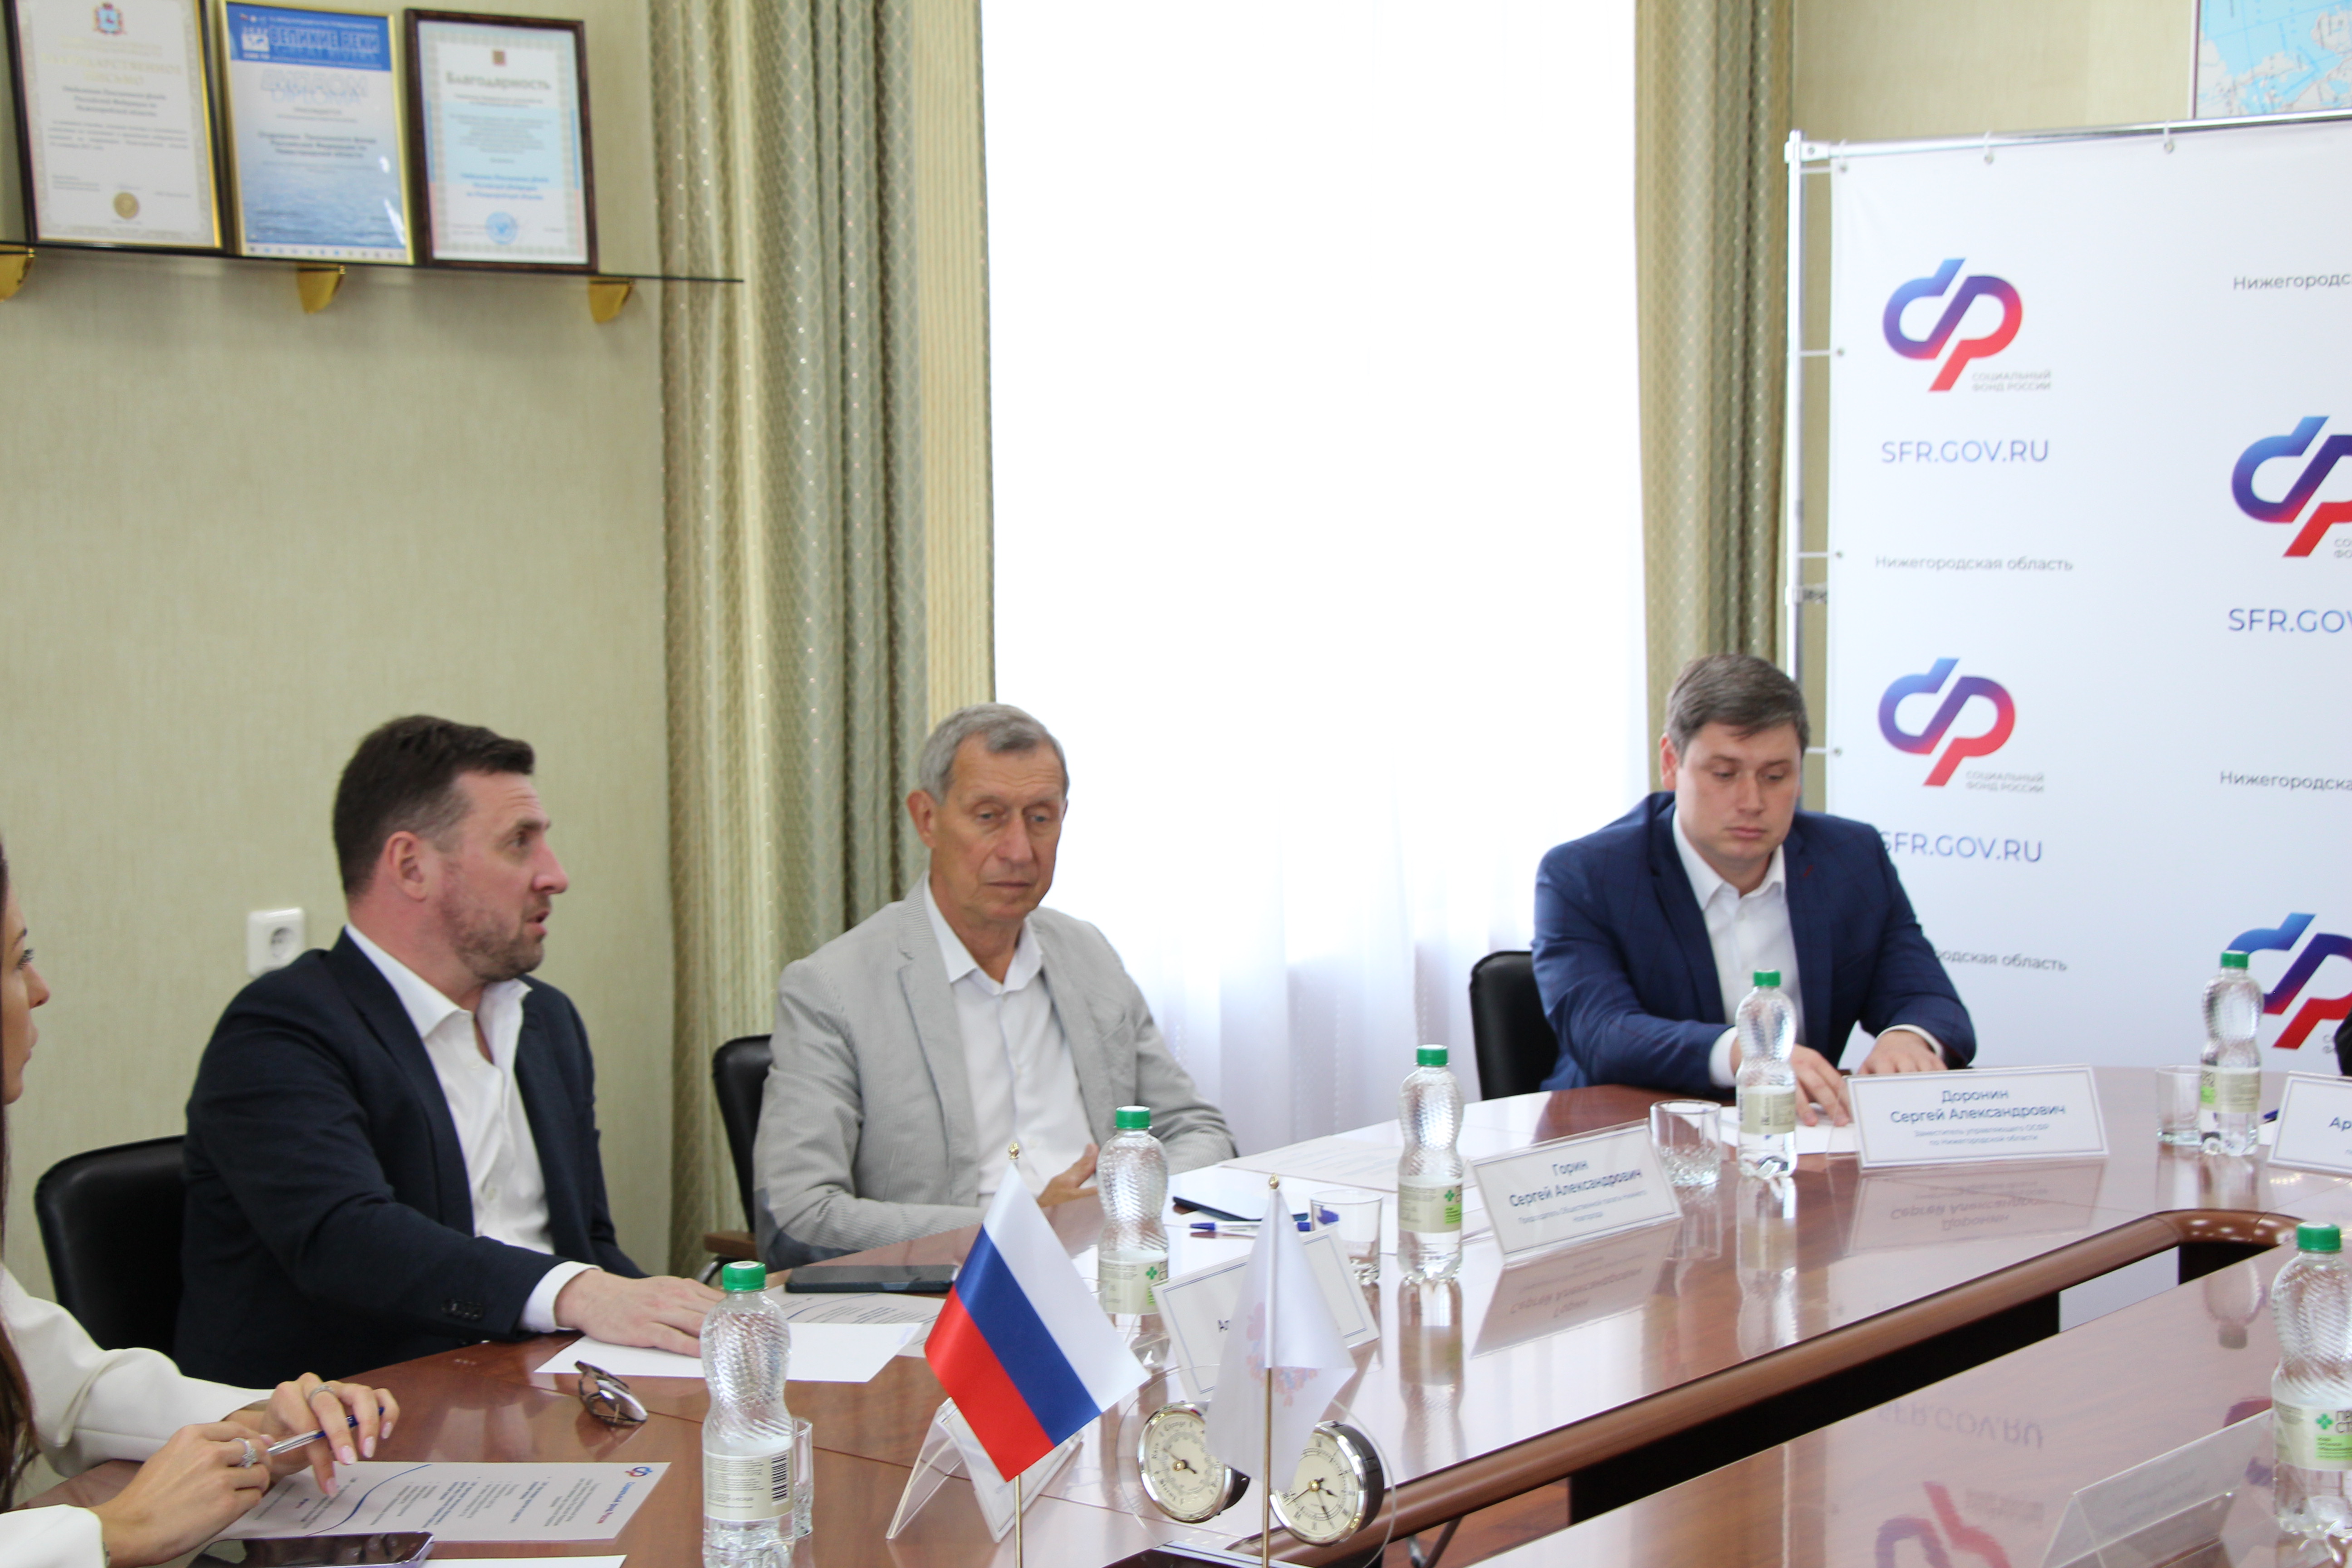 Общественная палата Нижнего Новгорода реализует совместный проект с Социальным фондом России по Нижегородской области